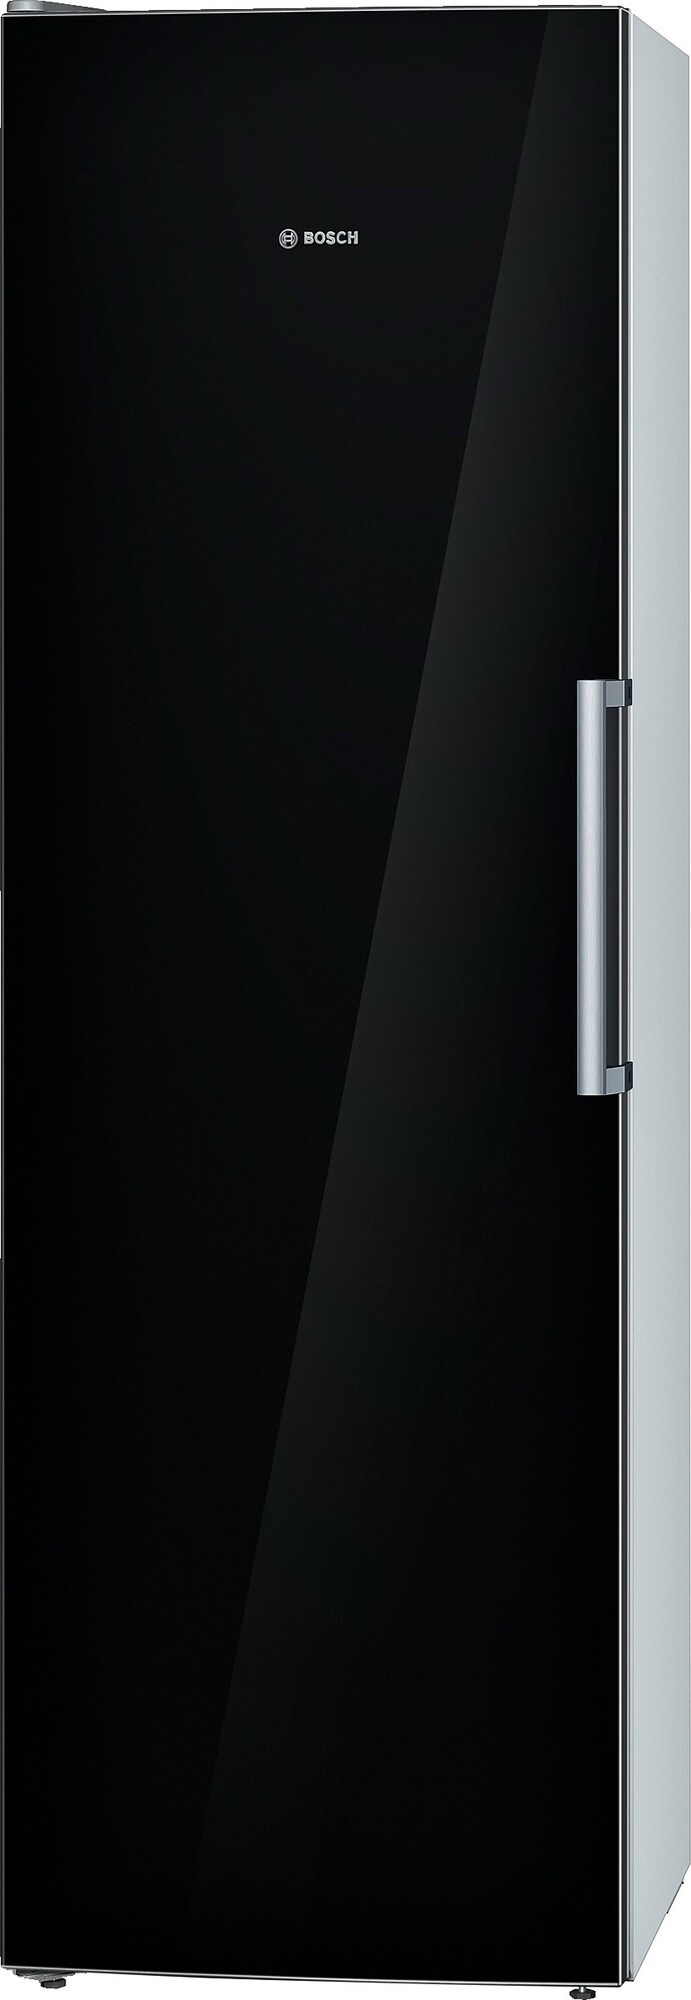 Bosch jääkaappi KSV36VB30 (186 cm) - Gigantti verkkokauppa